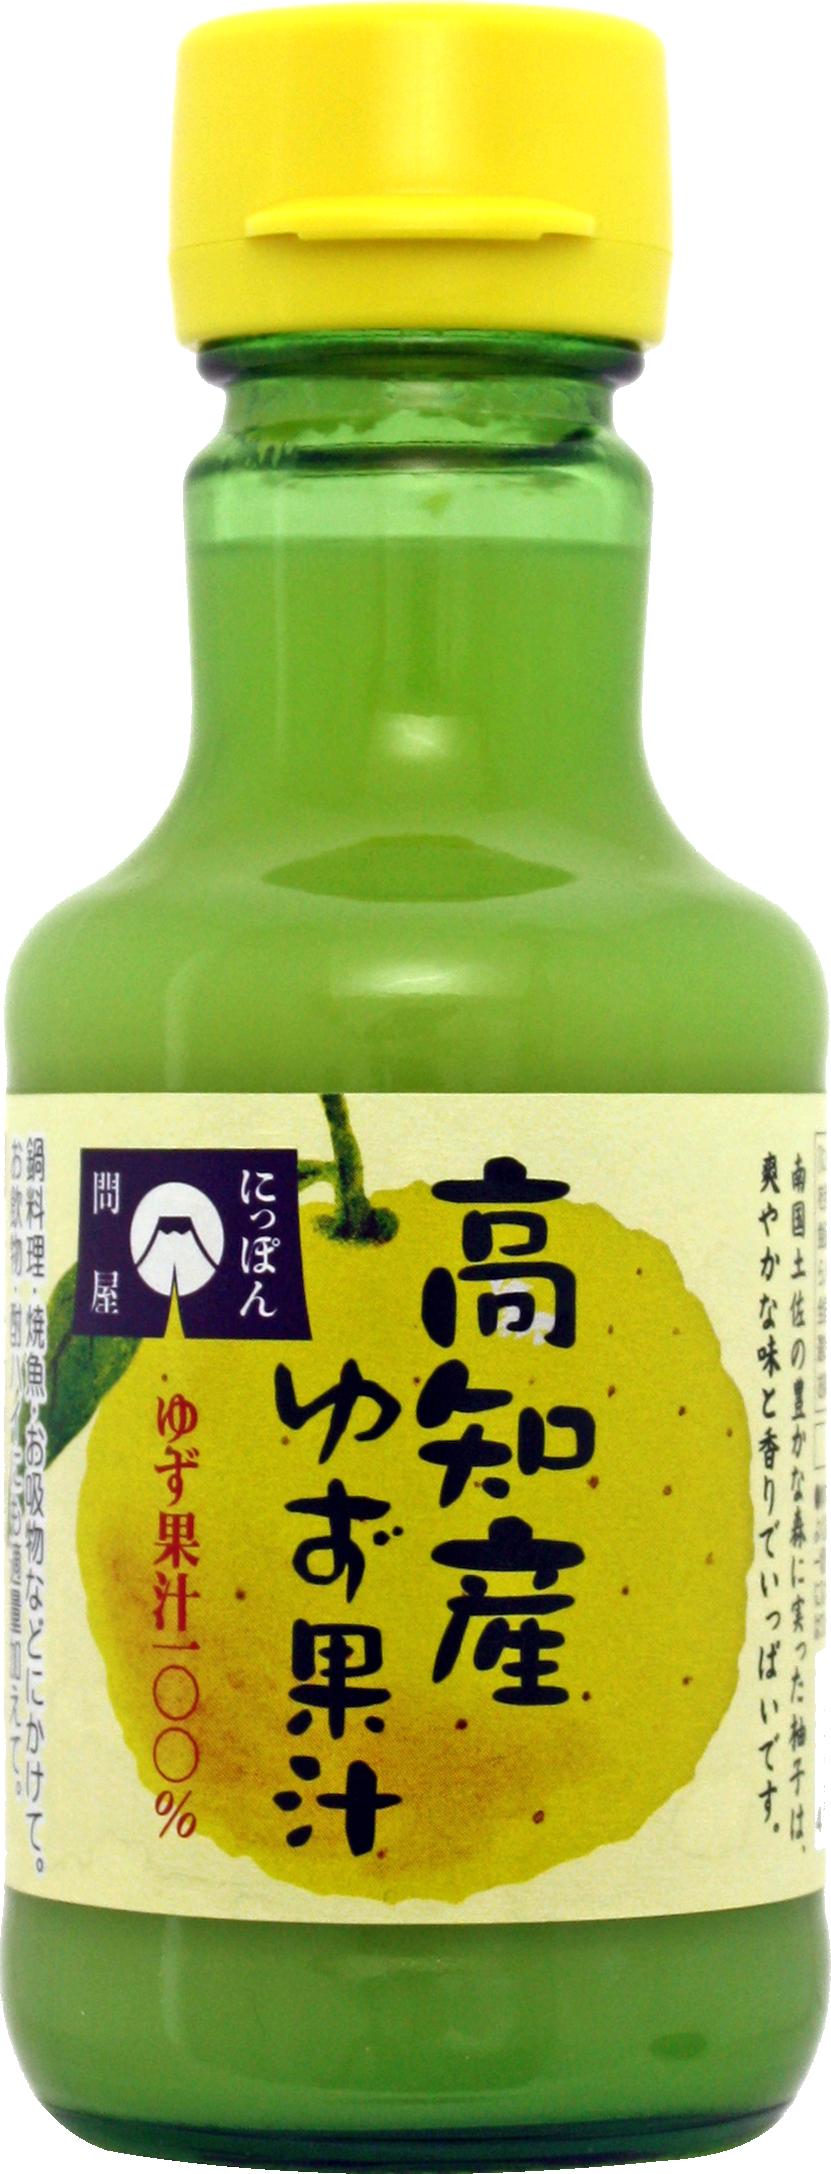 高知県産ゆず果汁